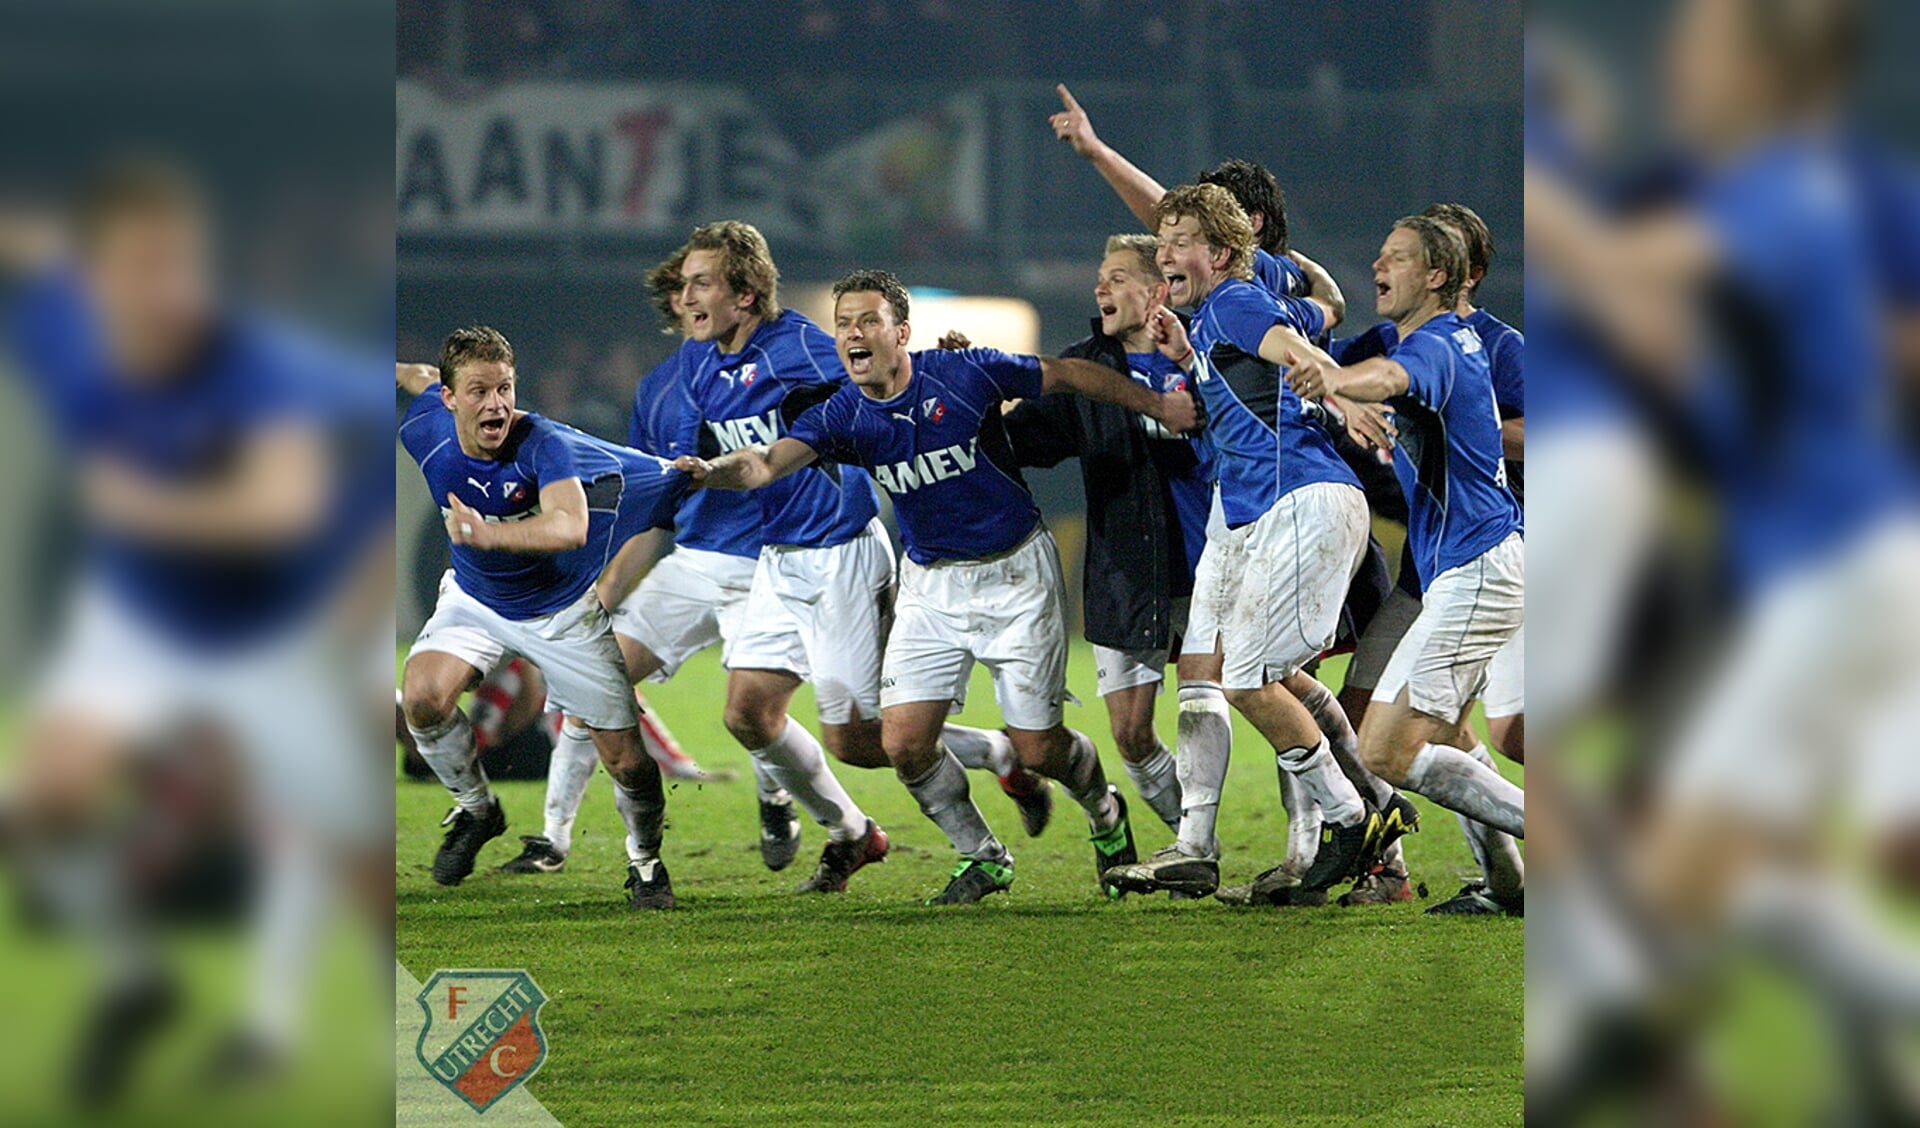 In de halve finale in 2004 FC Utrecht – Sparta scoorde Joost Broerse de 3-3. Na penalty’s bereikte FC Utrecht de finale en won de beker door van FC Twente te winnen. Joost Broerse 2e speler van links.